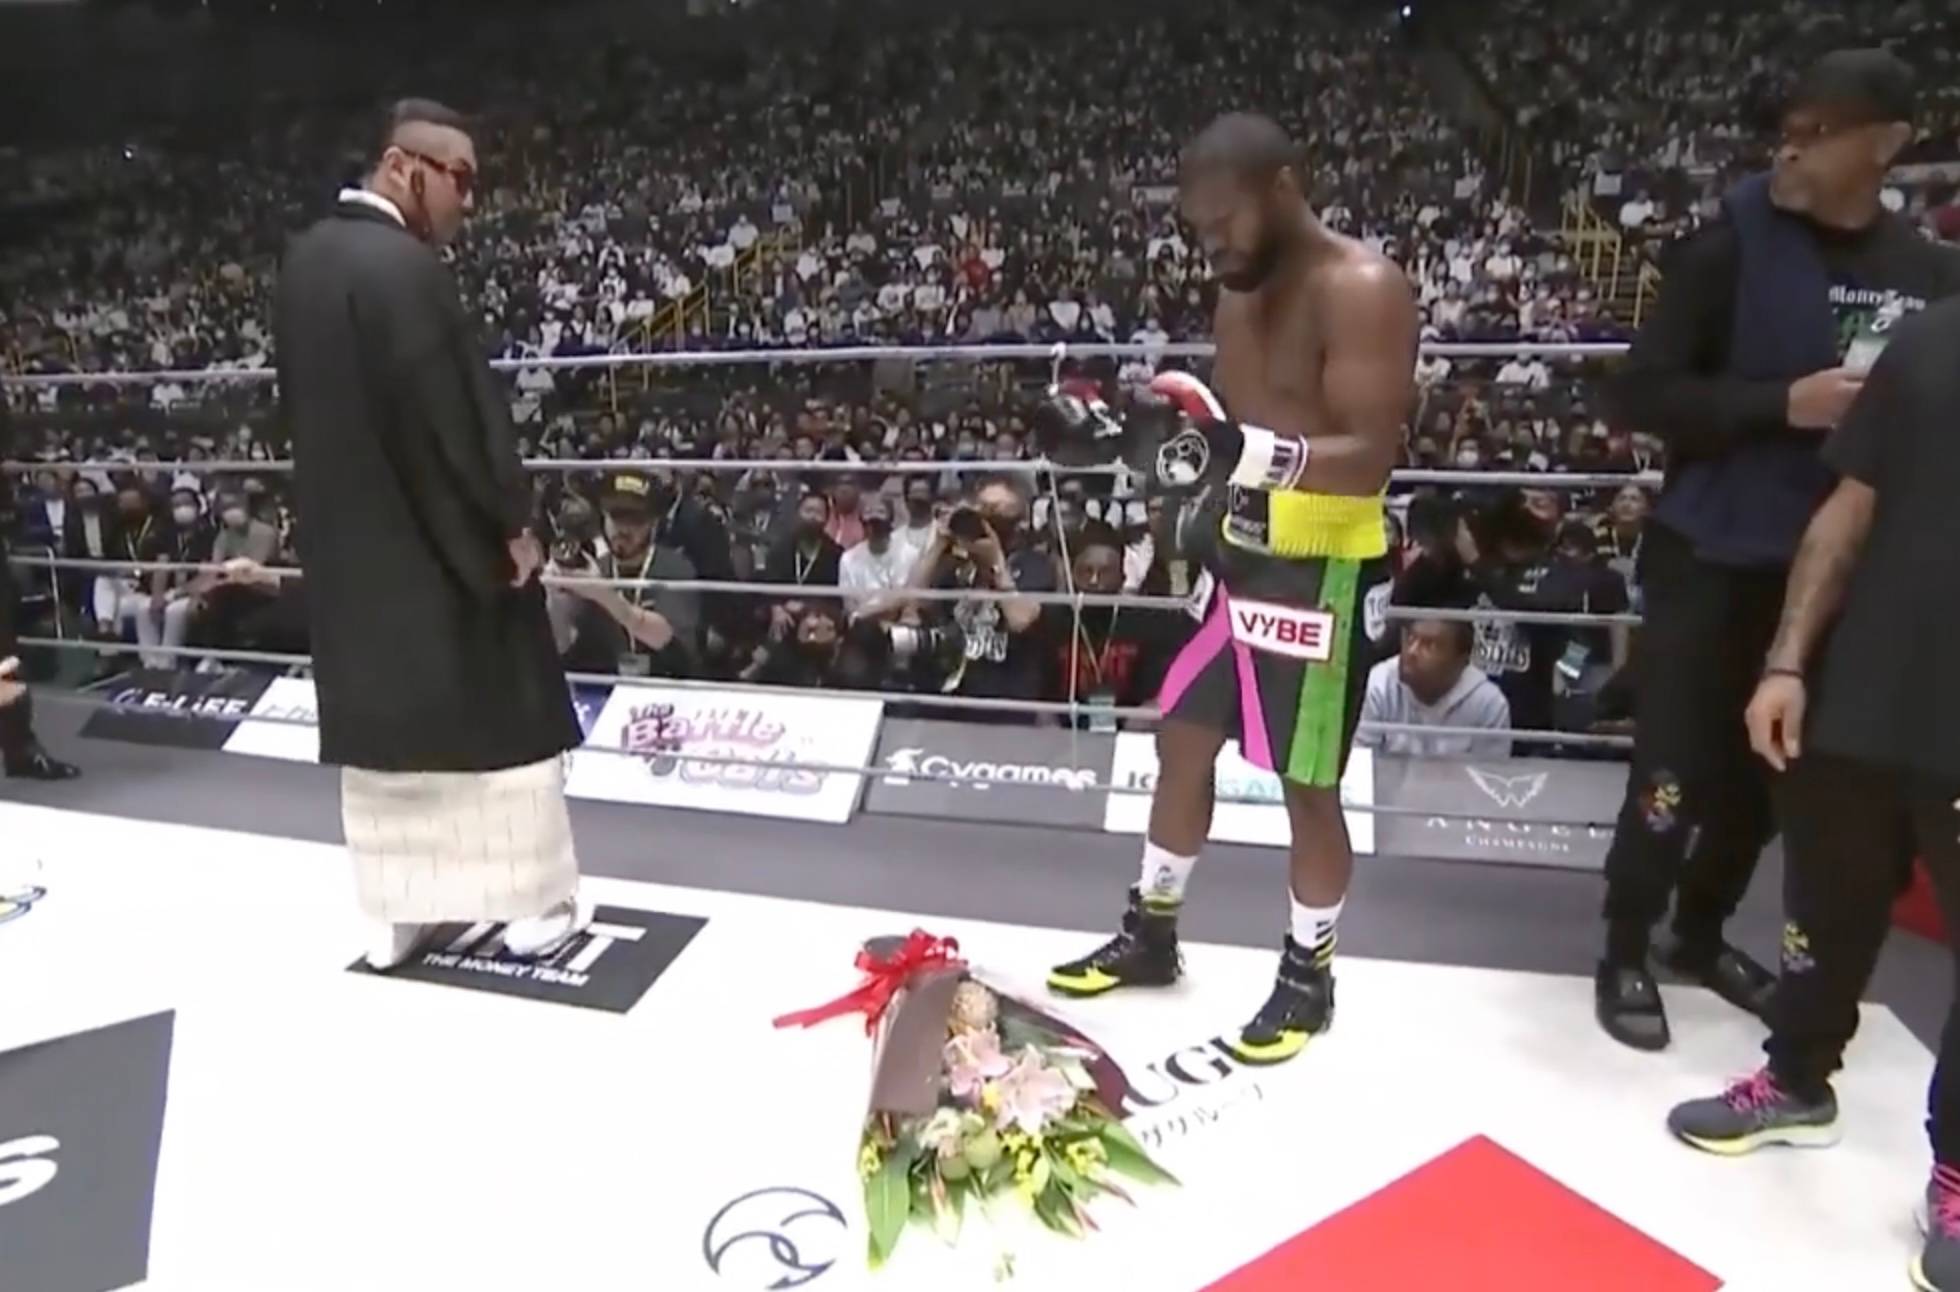 Bizarre scenes as flowers thrown at Floyd Mayweather’s feet - he goes on to KO Mikuru Asakura